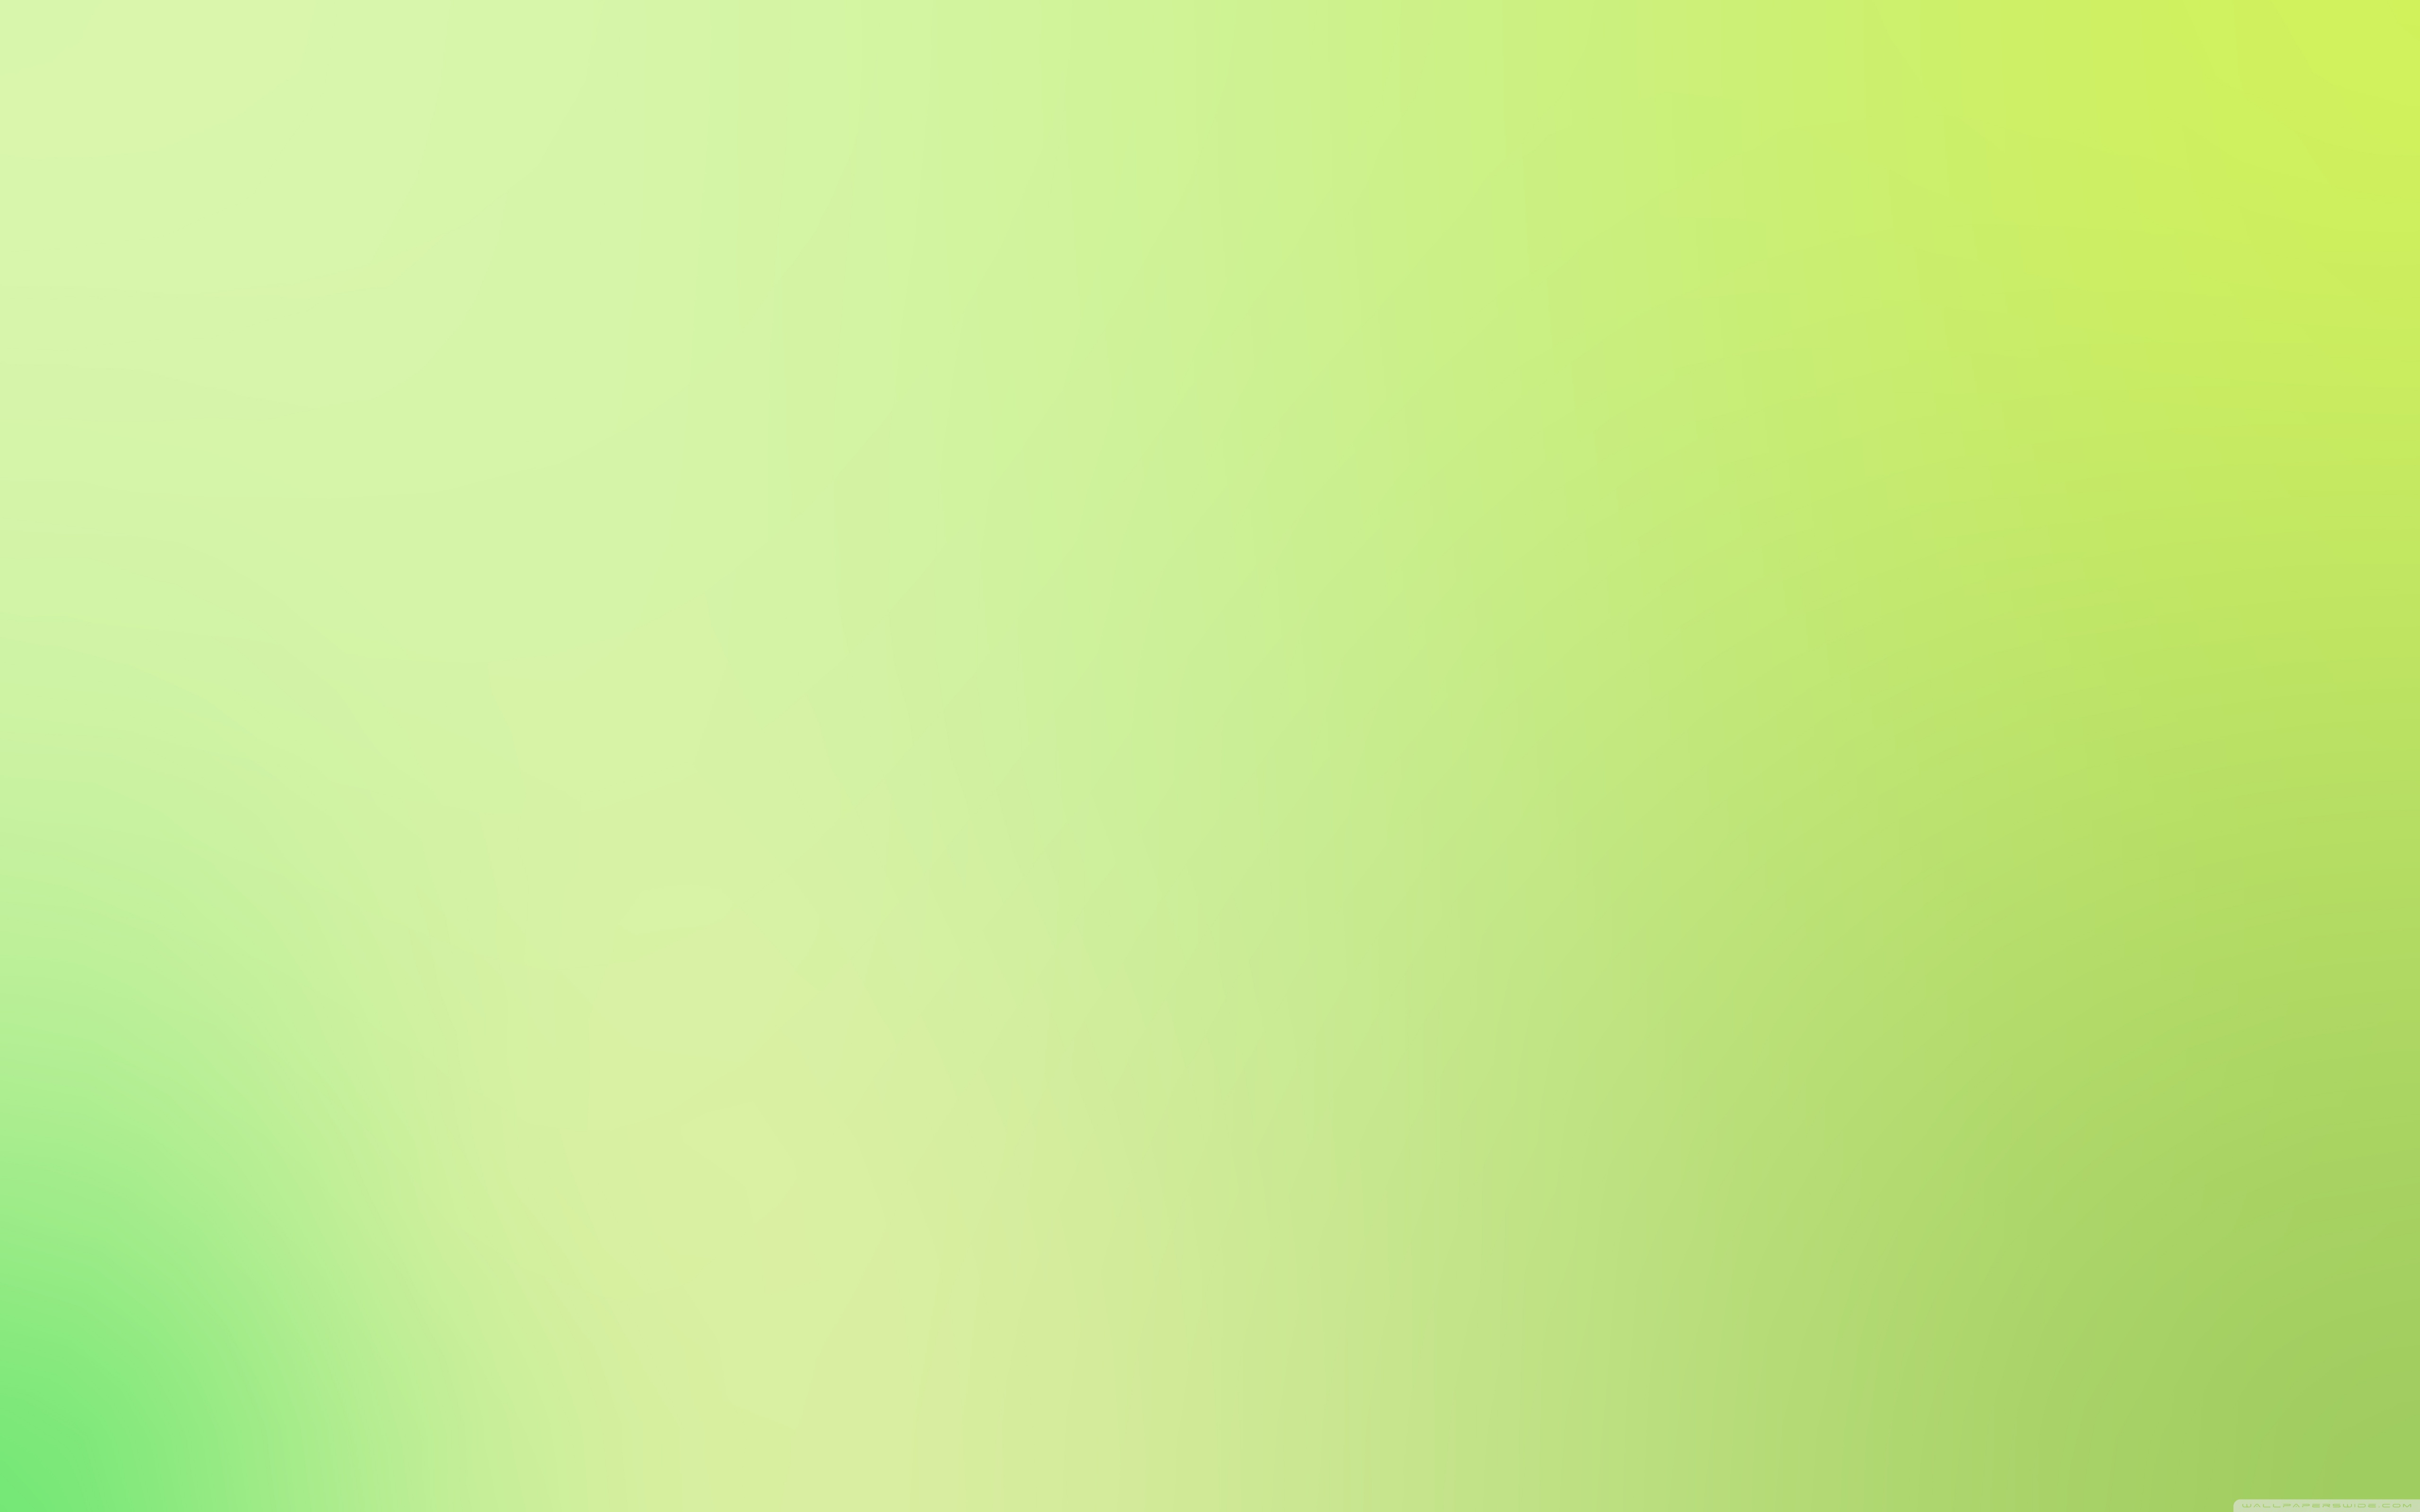 Light Green Background - 5120x3200 Wallpaper 